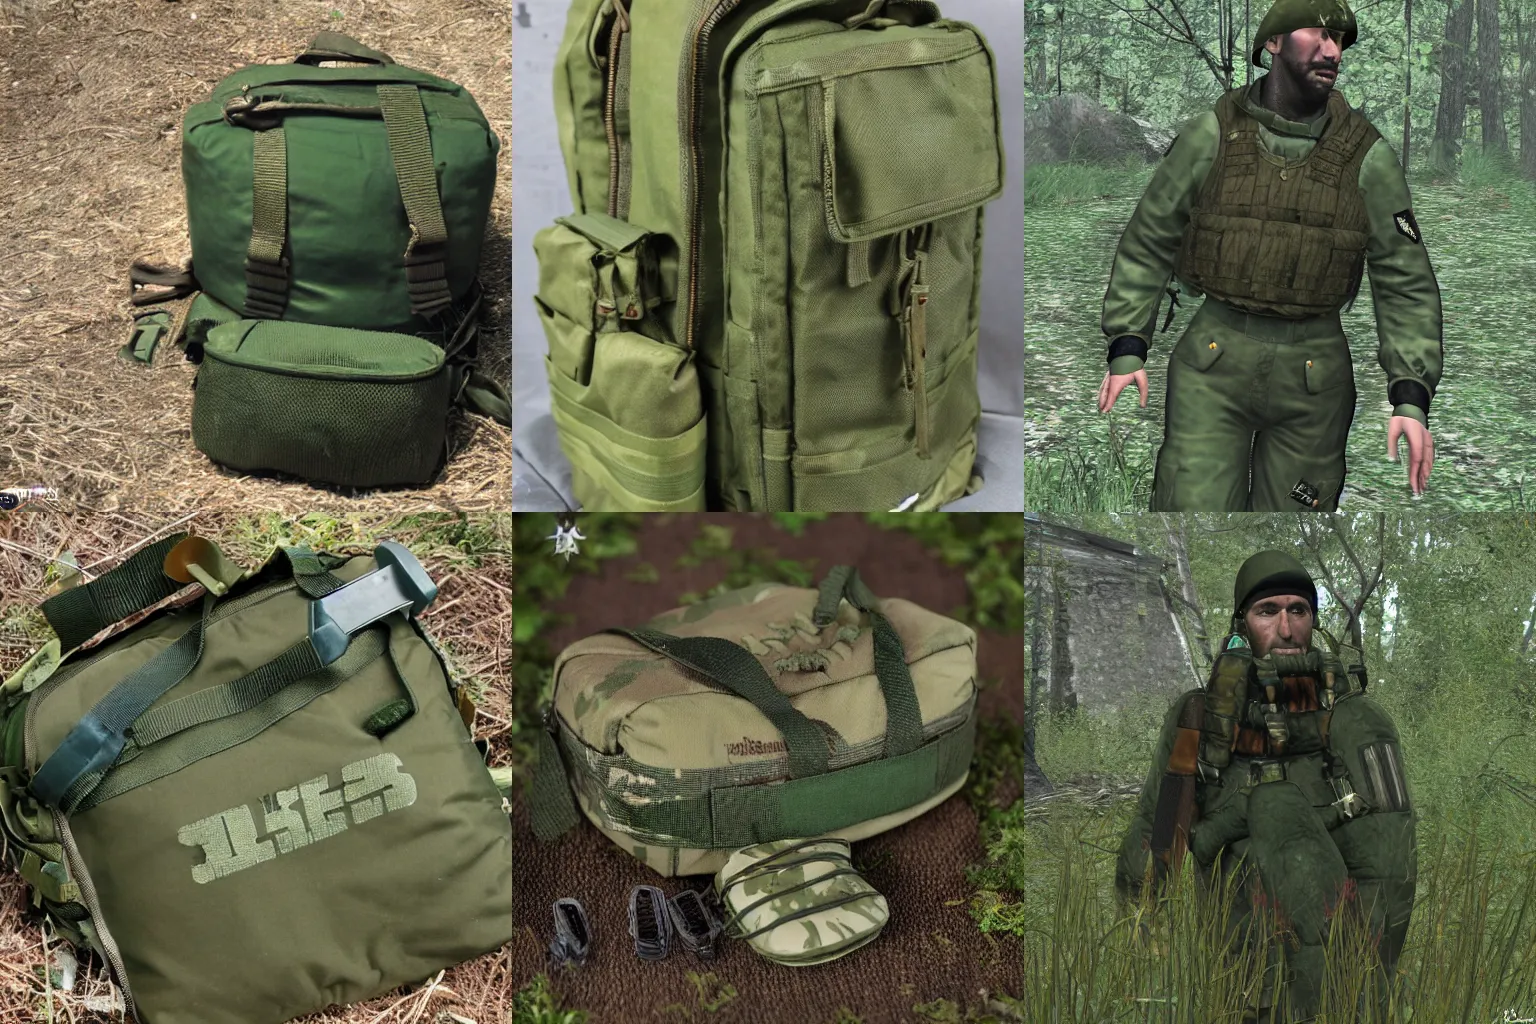 Prompt: Picnic S.T.A.L.K.E.R Poland Cold war jungle green beret